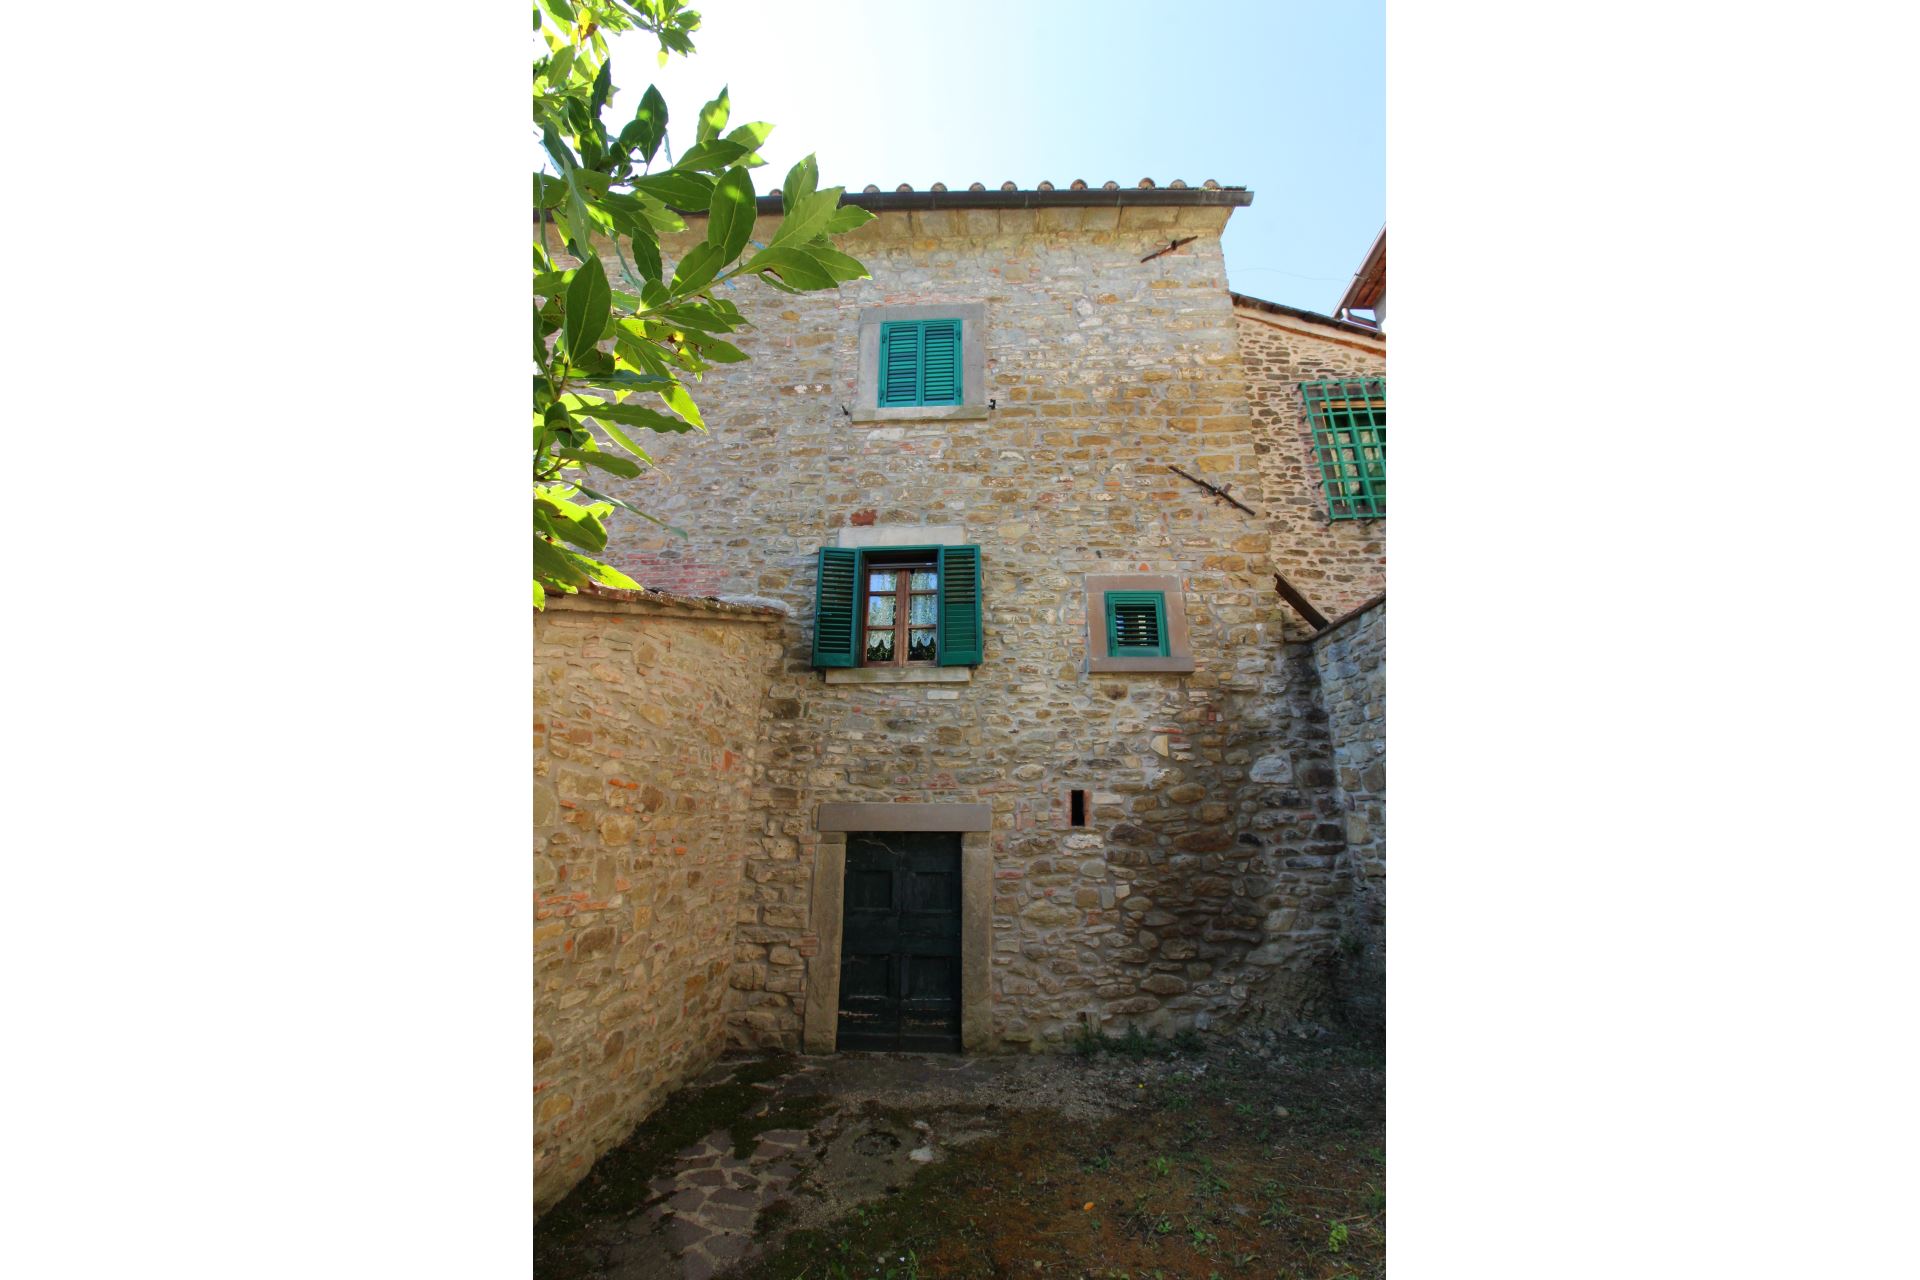 434_d662bb4_Kindvriendelijk vakantiehuis met privé zwembad, Borgo Caprile, Toscane, Cortona, Arezzo, (50).